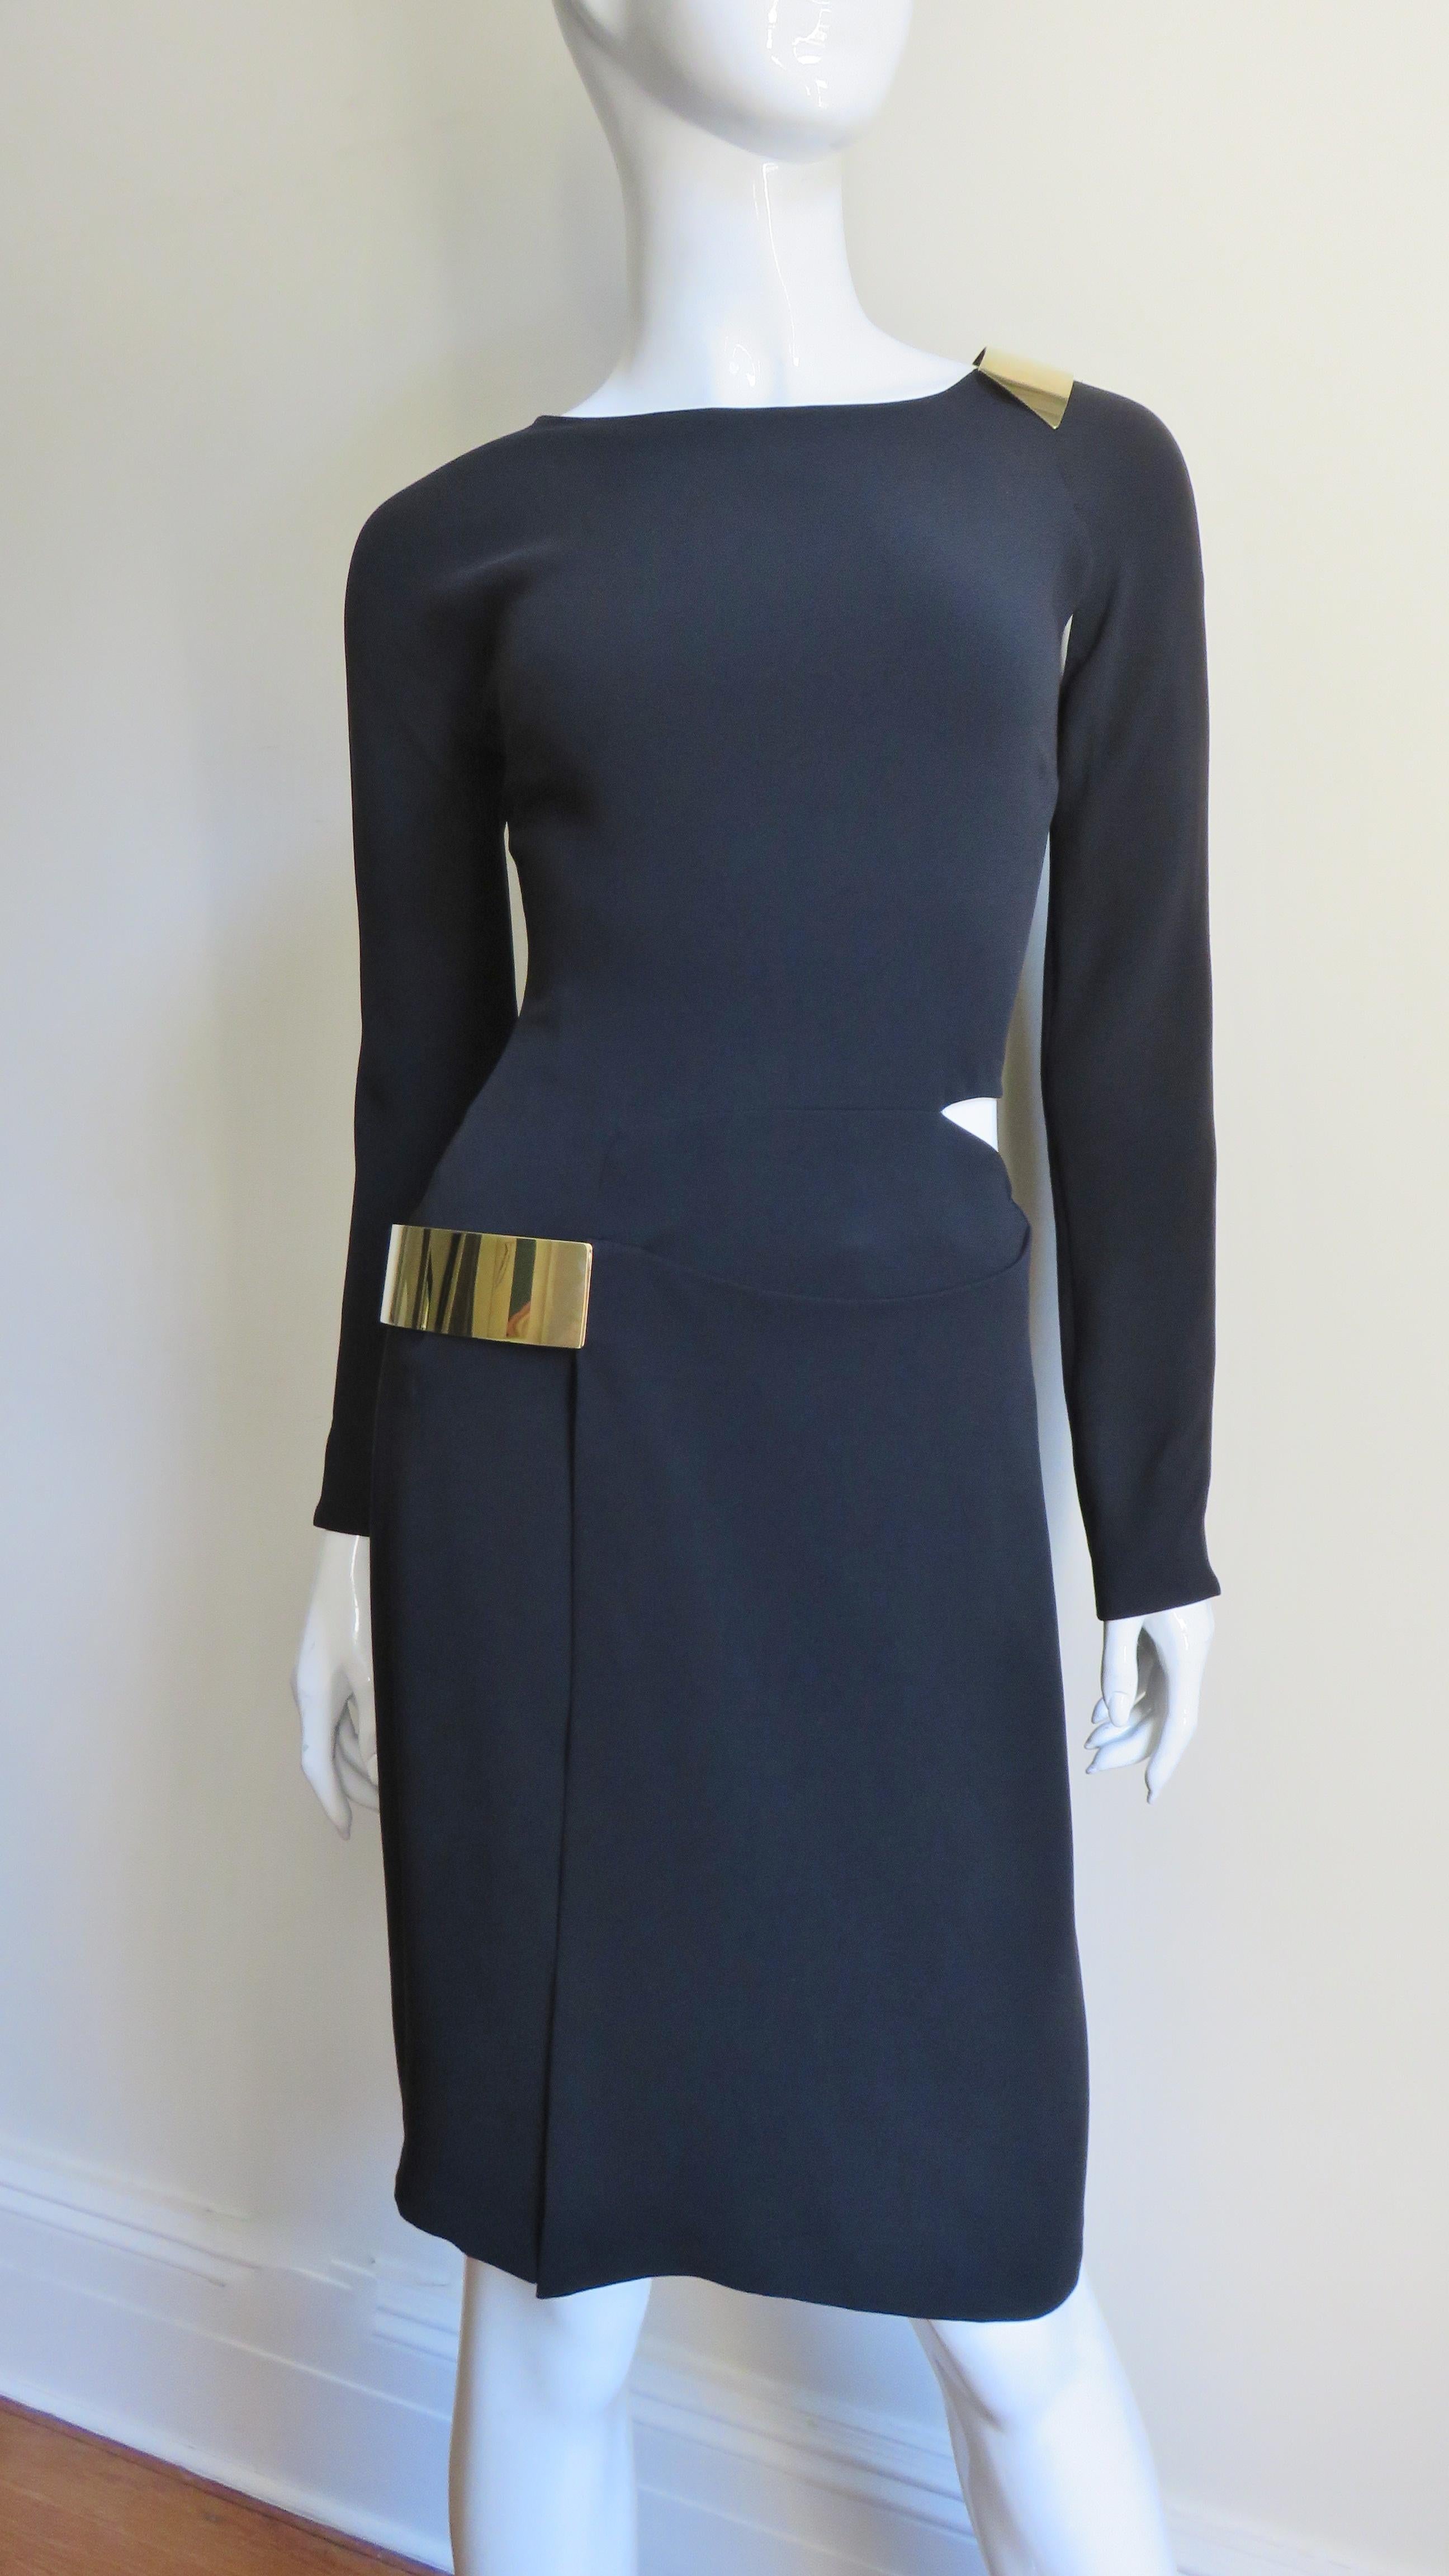 Une fabuleuse robe noire en jersey de soie signée Gucci. Elle présente une encolure simple, des manches longues à fermeture éclair et des découpes à l'épaule et sur le côté de la taille, ainsi qu'une fente sur le devant de la jupe droite. La fente